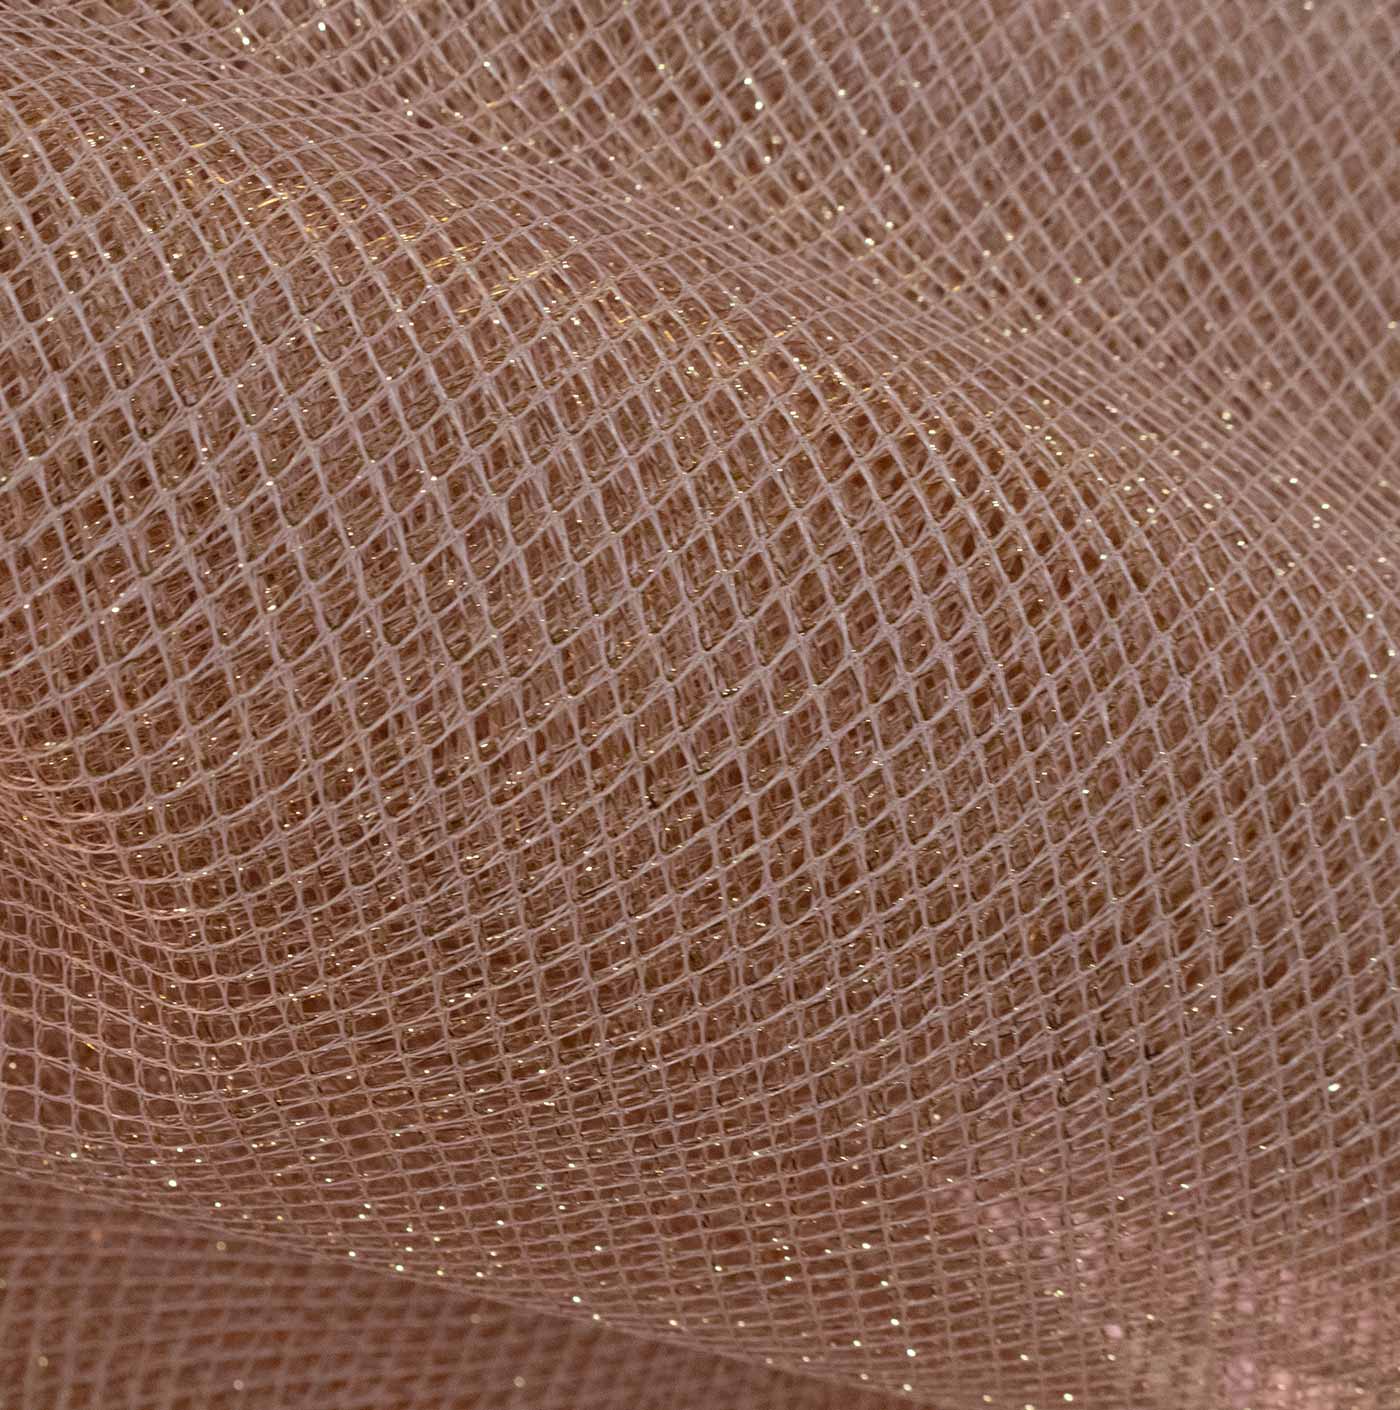 Peach Fishnet Mesh Fabric